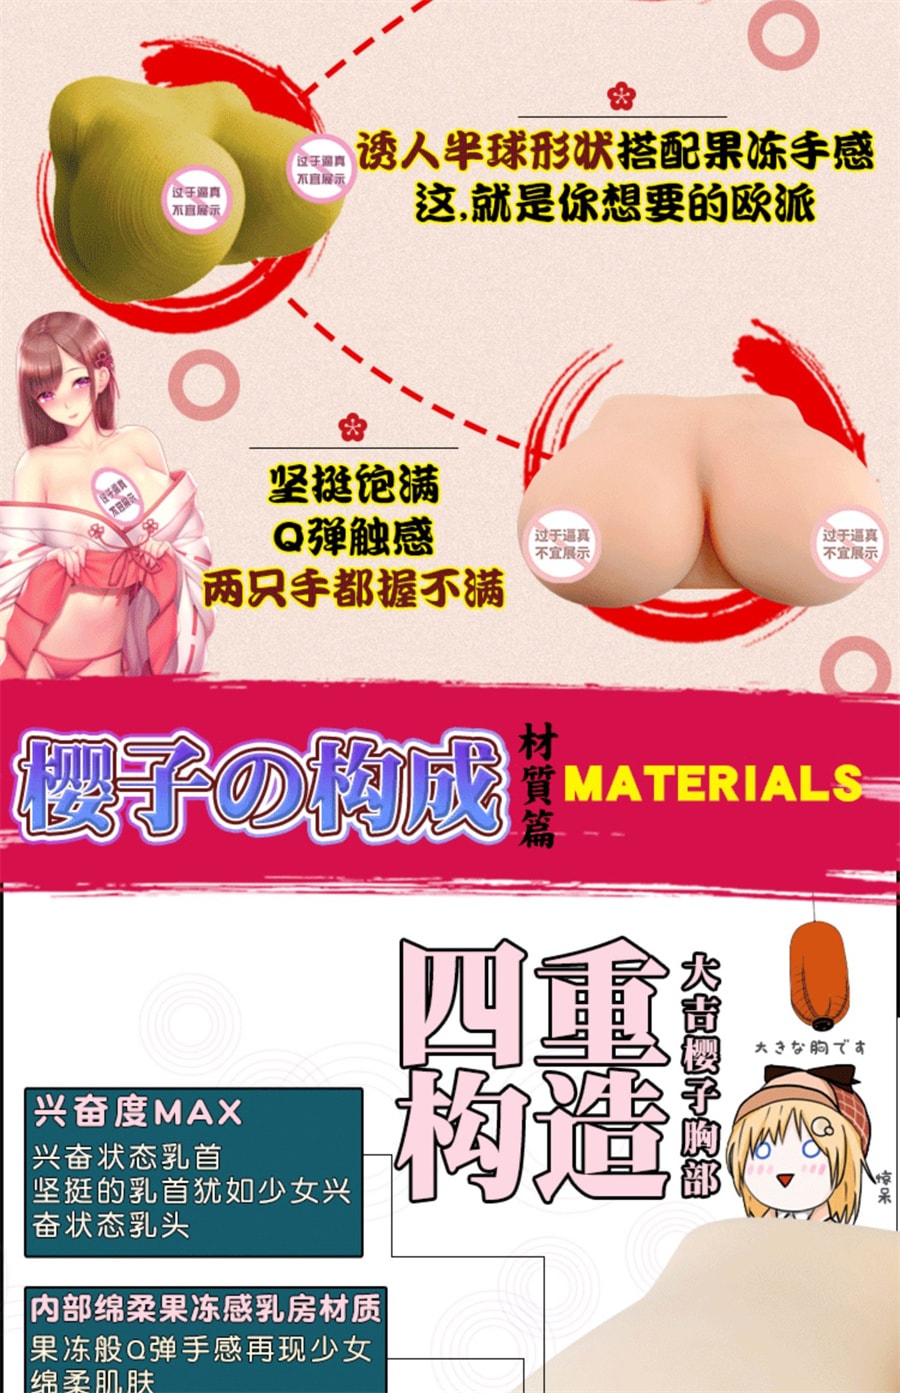 【中国直邮】日本GXP大吉樱子假奶子咪咪球硅胶果冻 乳房仿真胸部男用倒模(3kg) 送大礼包